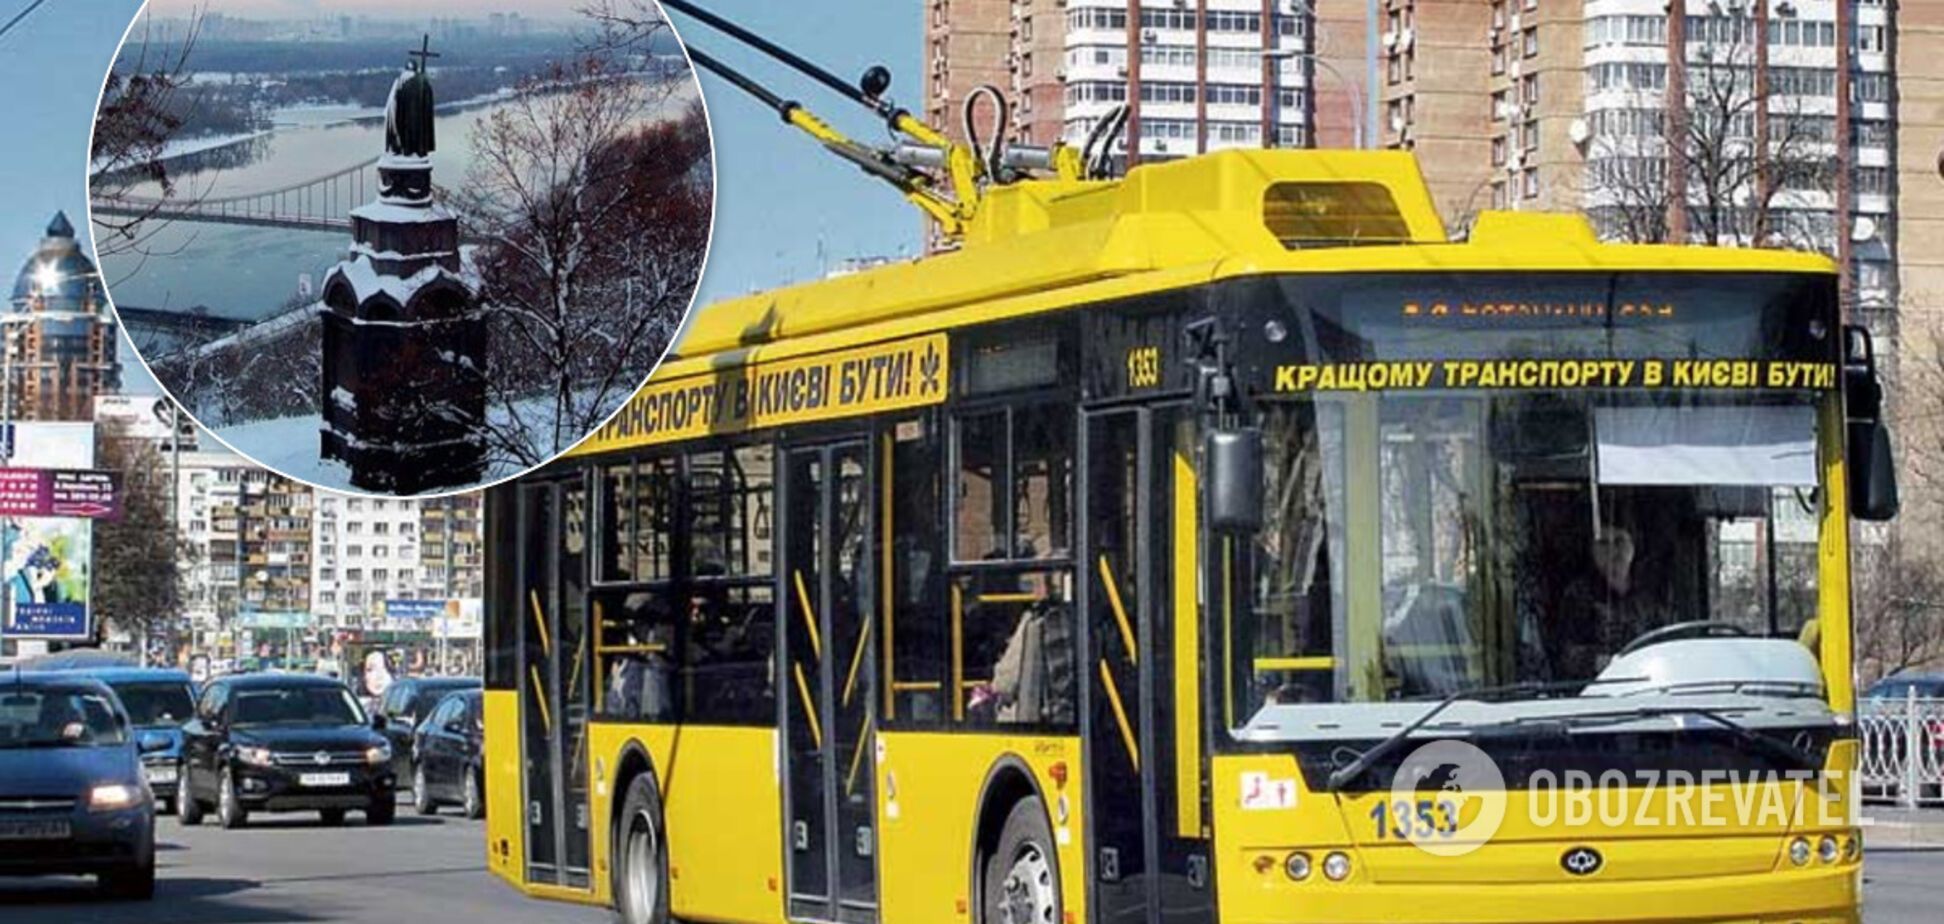 В Киеве в троллейбусе женщину унизили из-за украинского языка